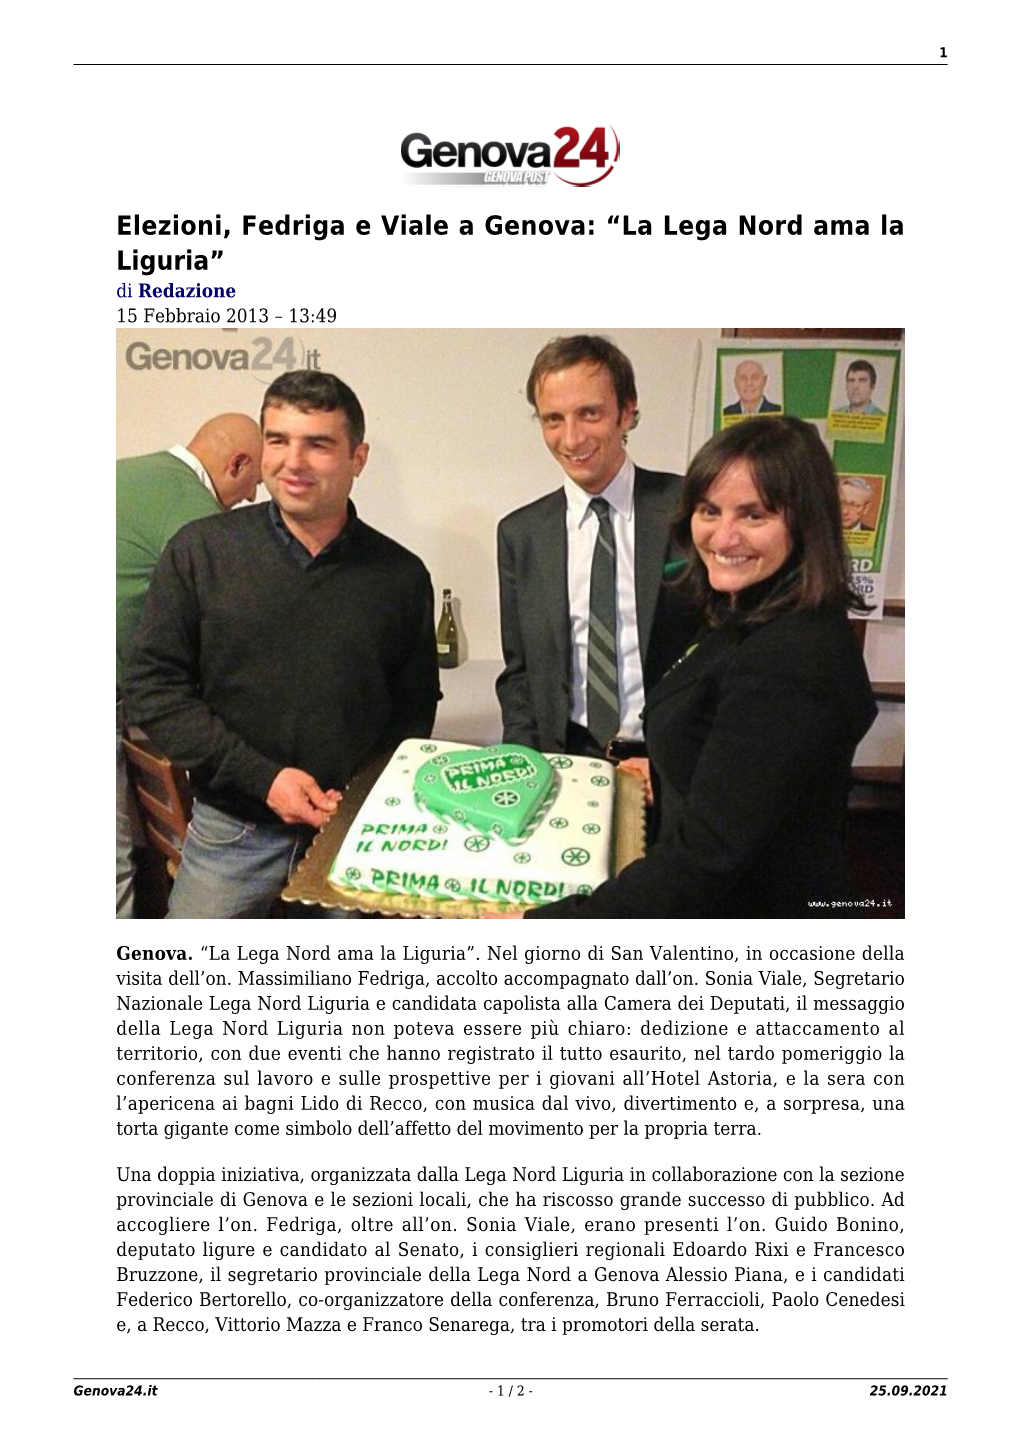 Elezioni, Fedriga E Viale a Genova: “La Lega Nord Ama La Liguria” Di Redazione 15 Febbraio 2013 – 13:49